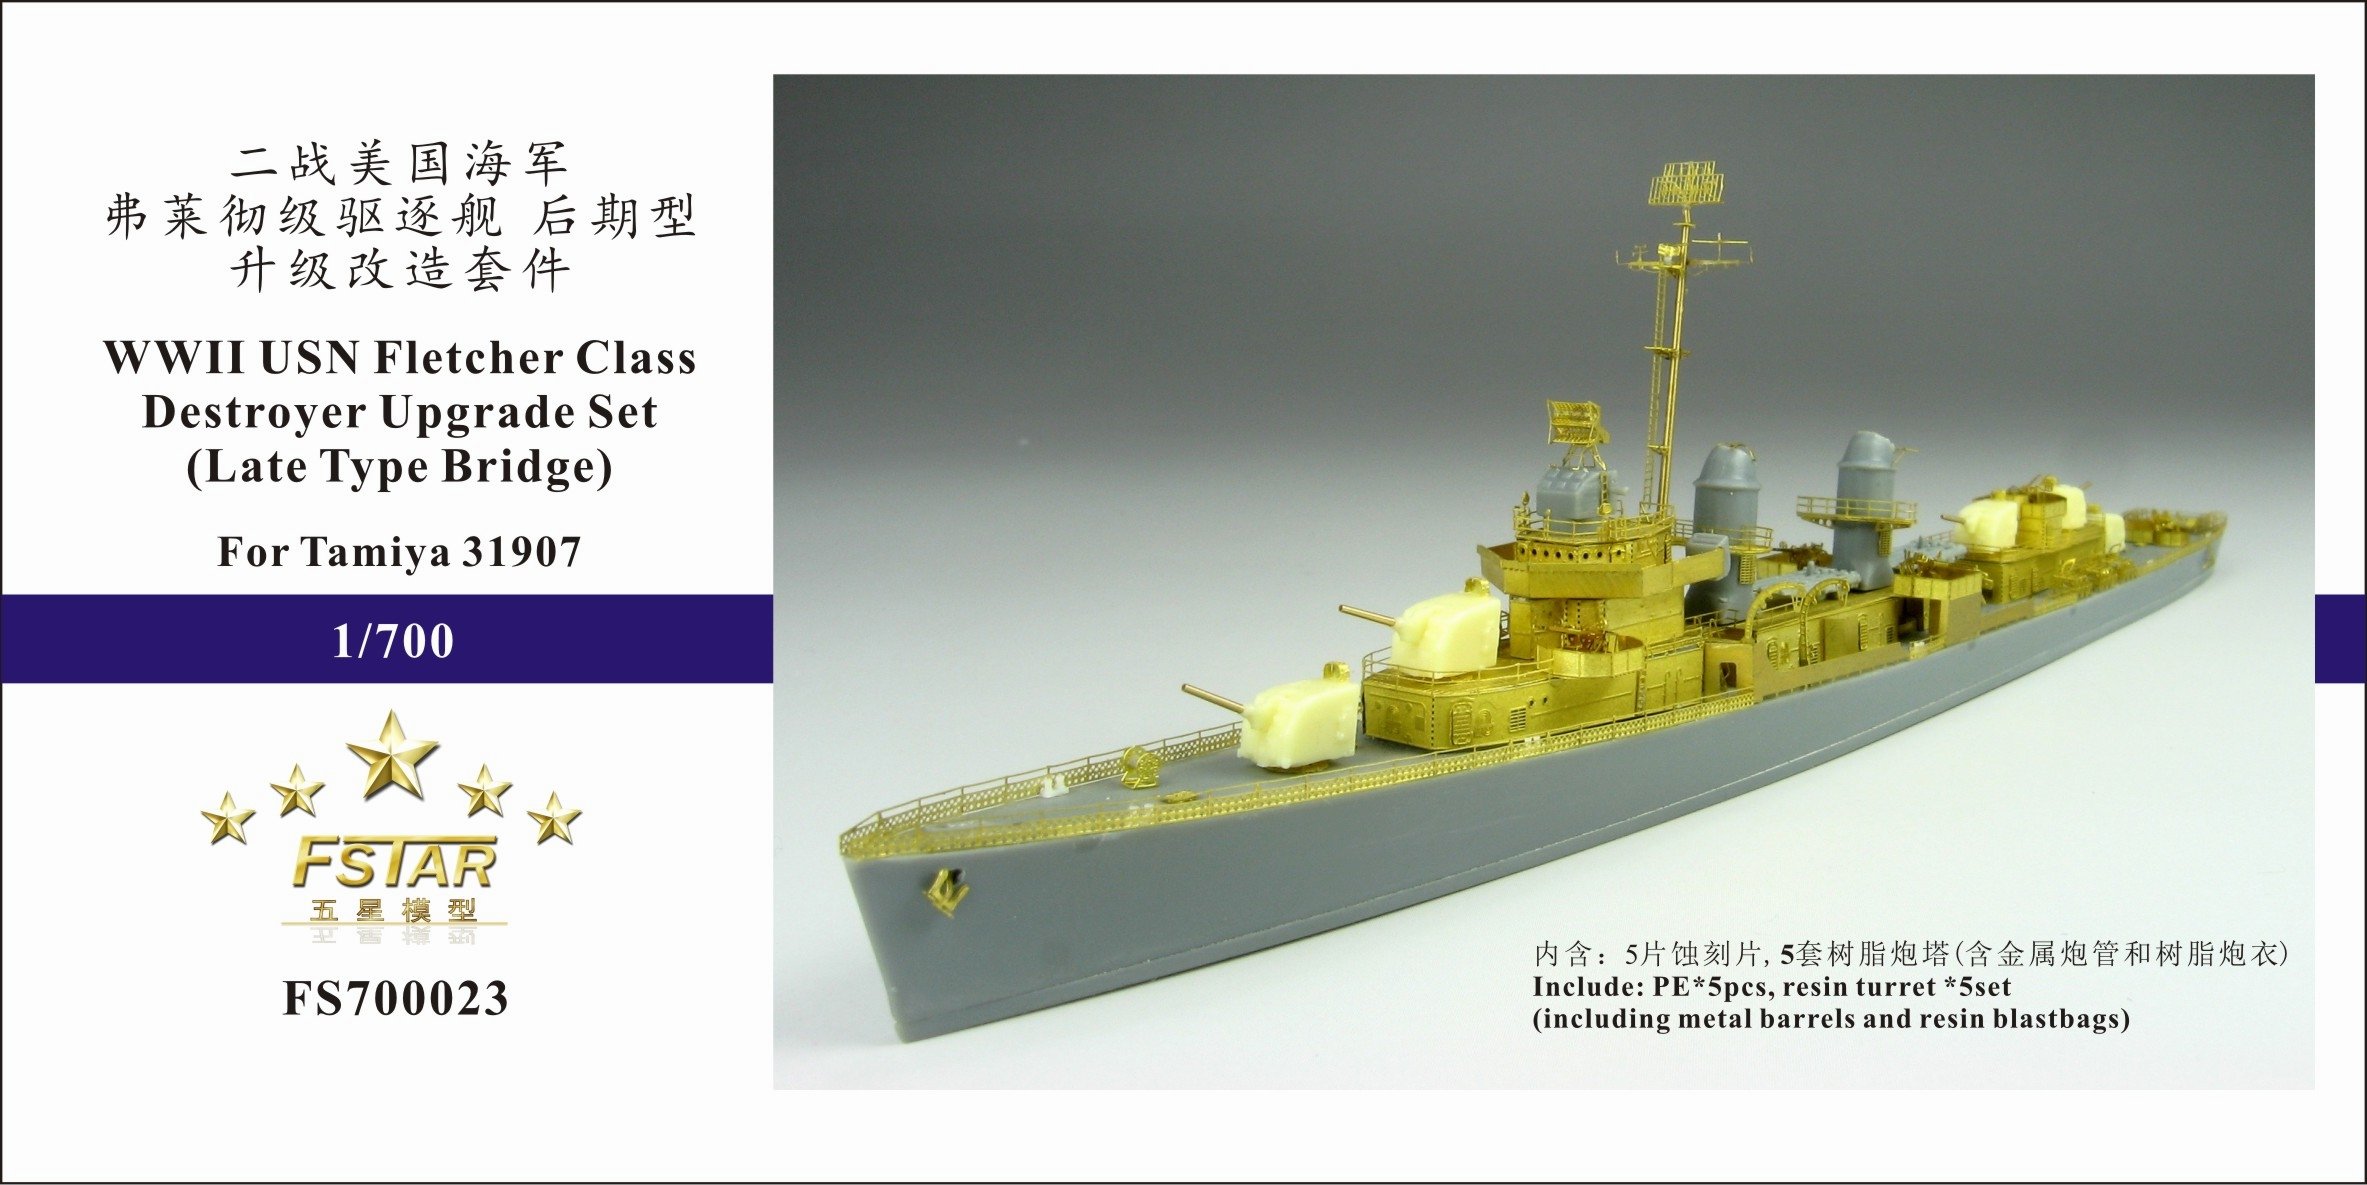 1/700 二战美国海军弗莱彻级驱逐舰(后期型舰桥)升级改造套件(配田宫31907) - 点击图像关闭